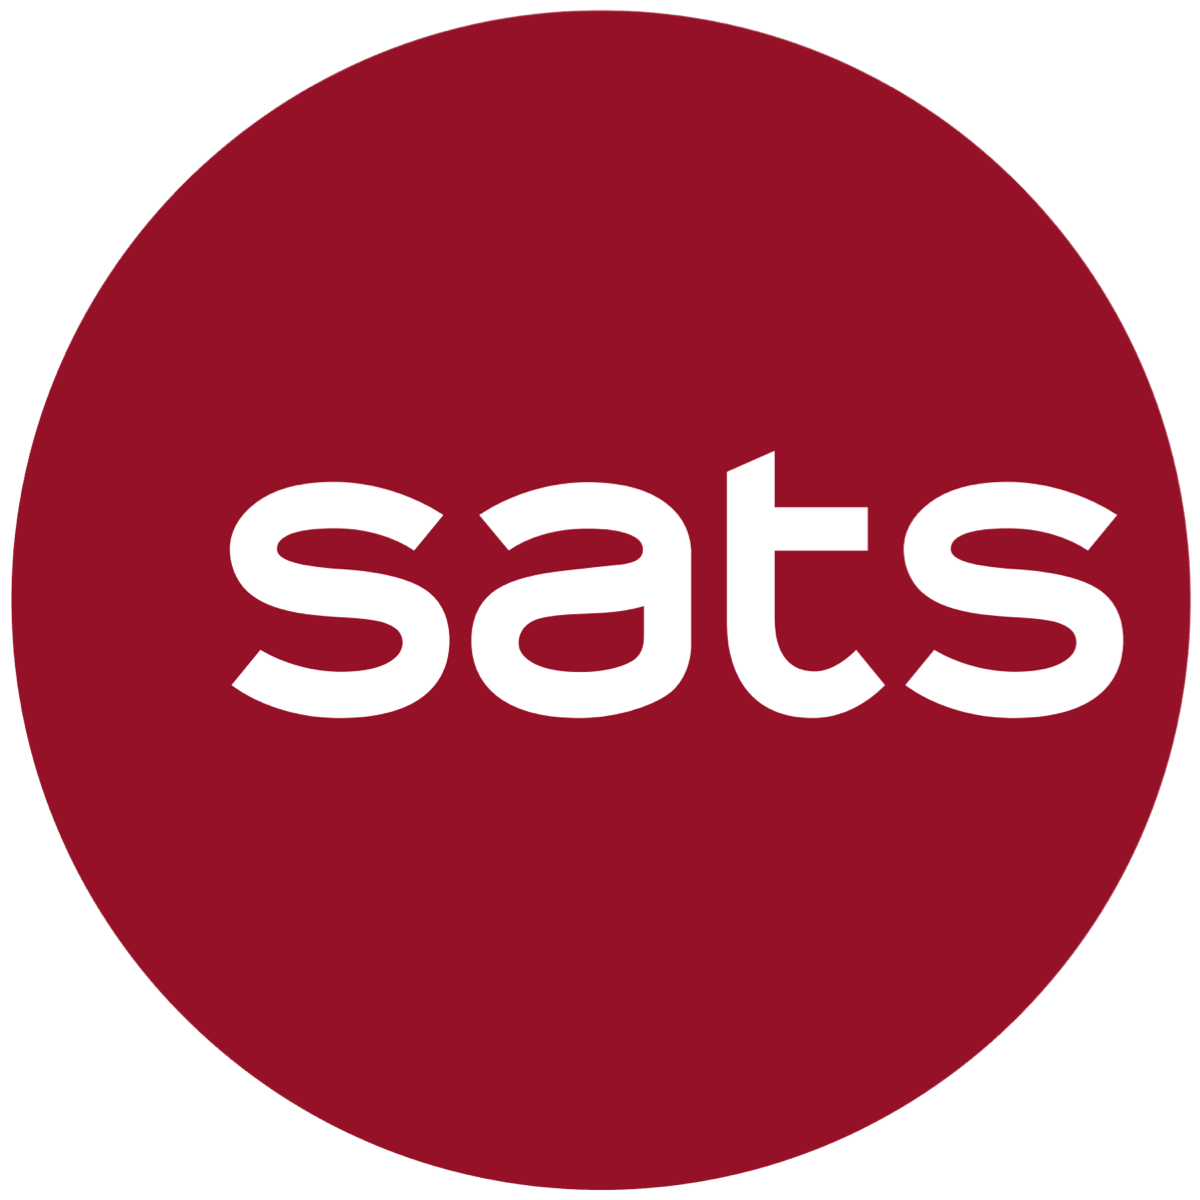 SATS Ltd - CIMB Research 2017-11-09: Can-do Spirit